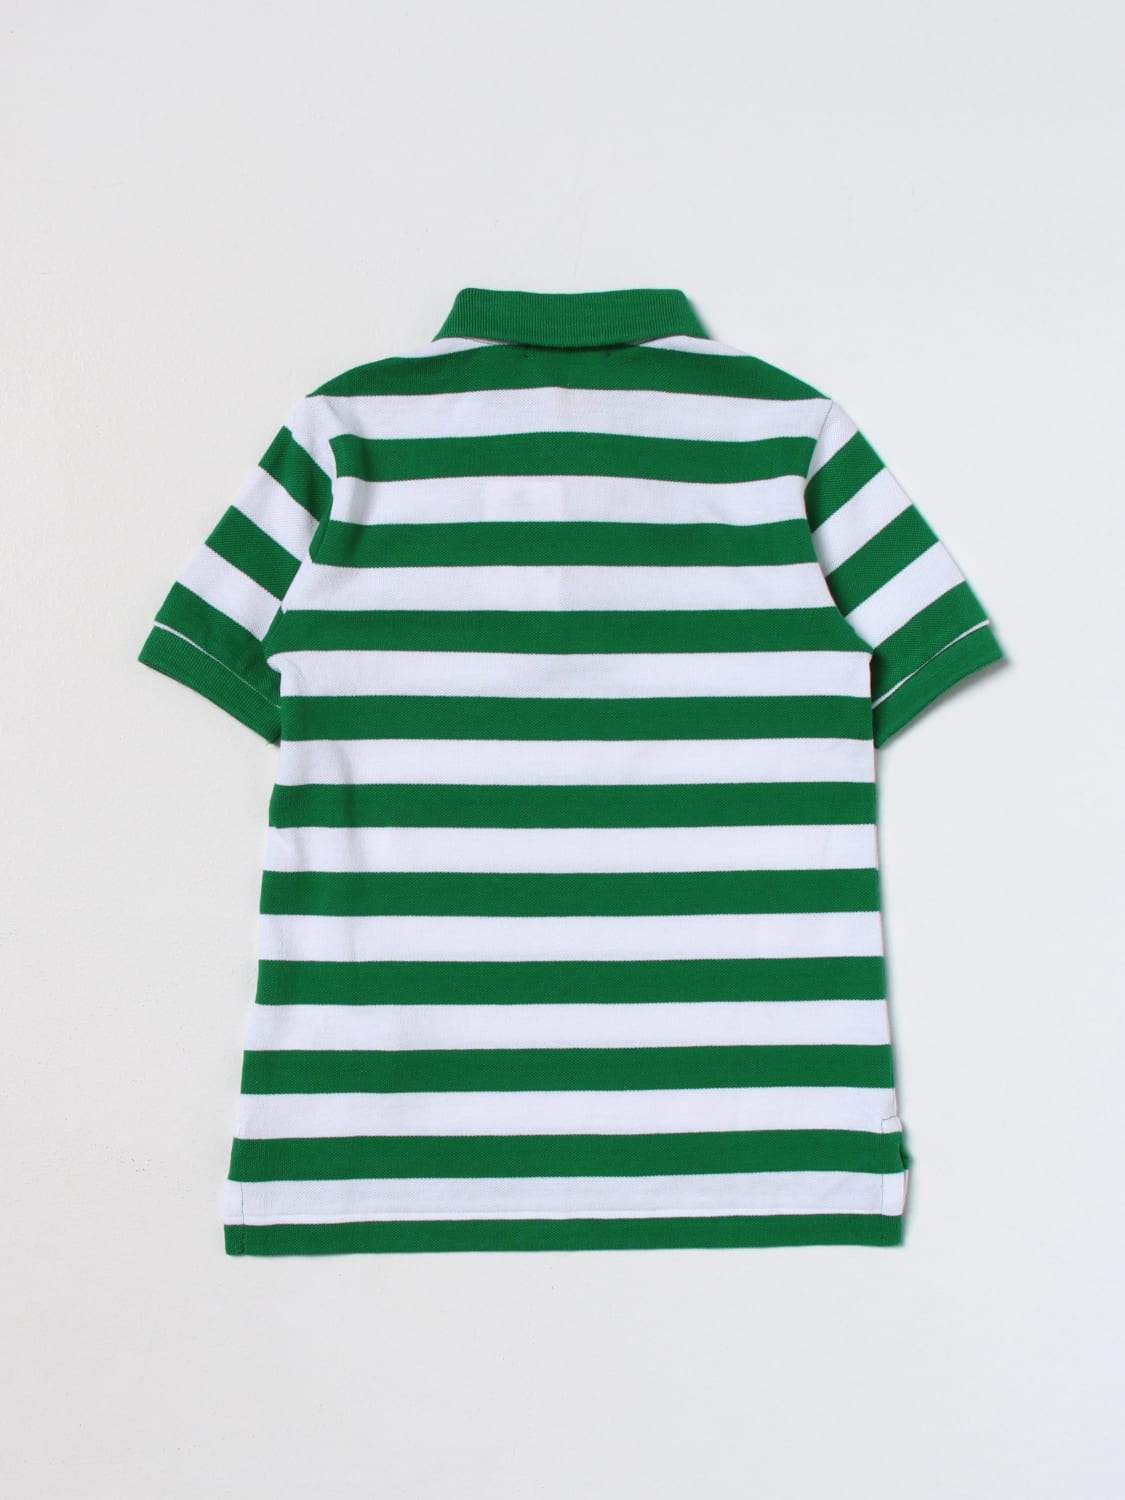 POLO RALPH LAUREN: polo shirt for boys - Green | Polo Ralph Lauren polo ...